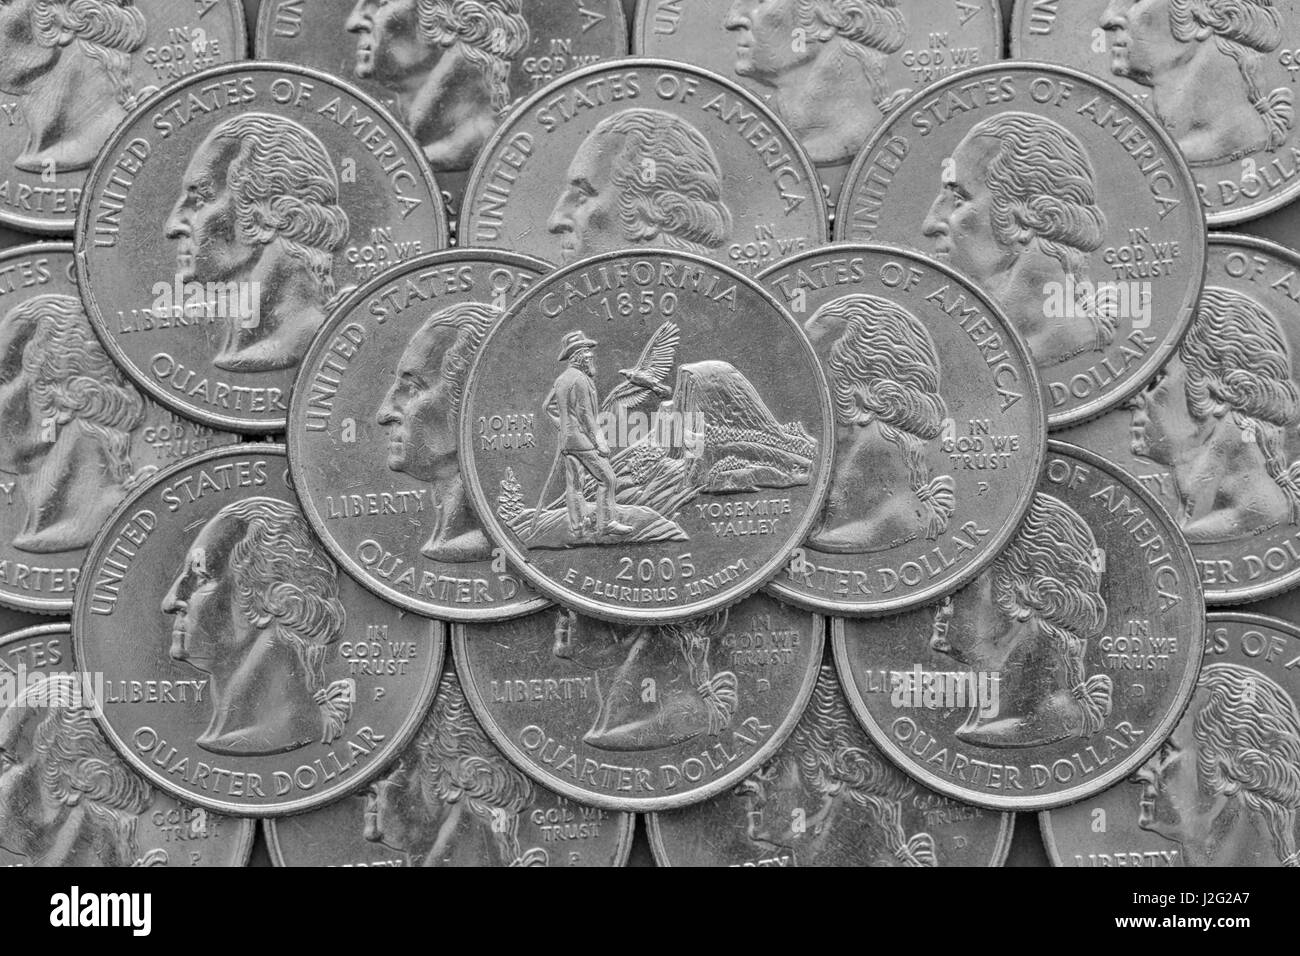 Lo stato della California e delle monete degli Stati Uniti d'America. Pila di noi trimestre monete con George Washington e sulla parte superiore di un quarto di Stato della California. Foto Stock